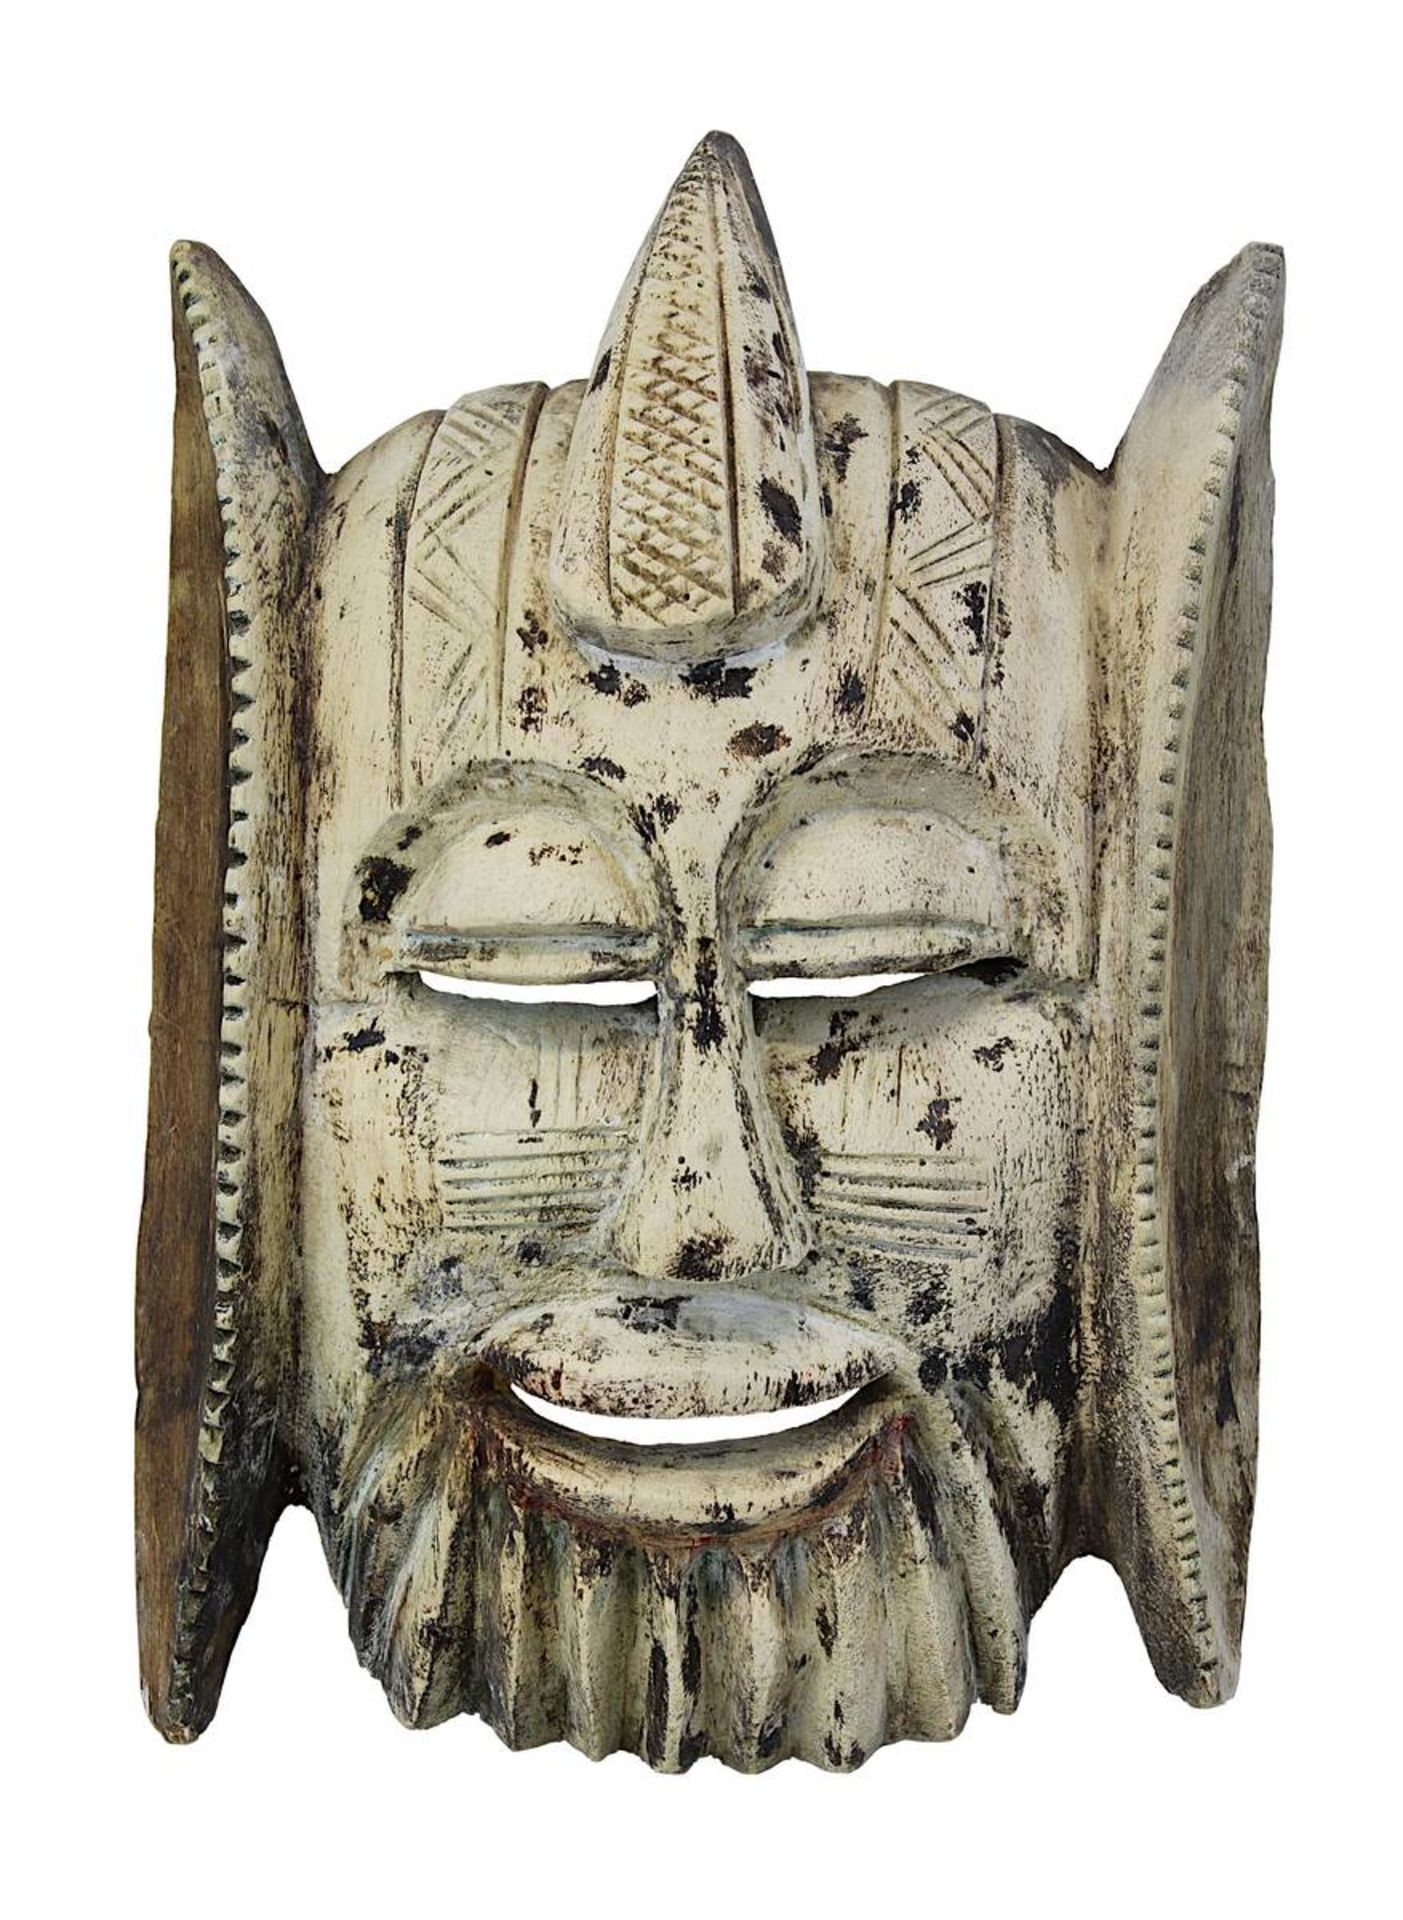 Dekorative Maske unbekannter Herkunft, leichtes Holz geschnitzt, Schauseite weiß gefärbt und mit